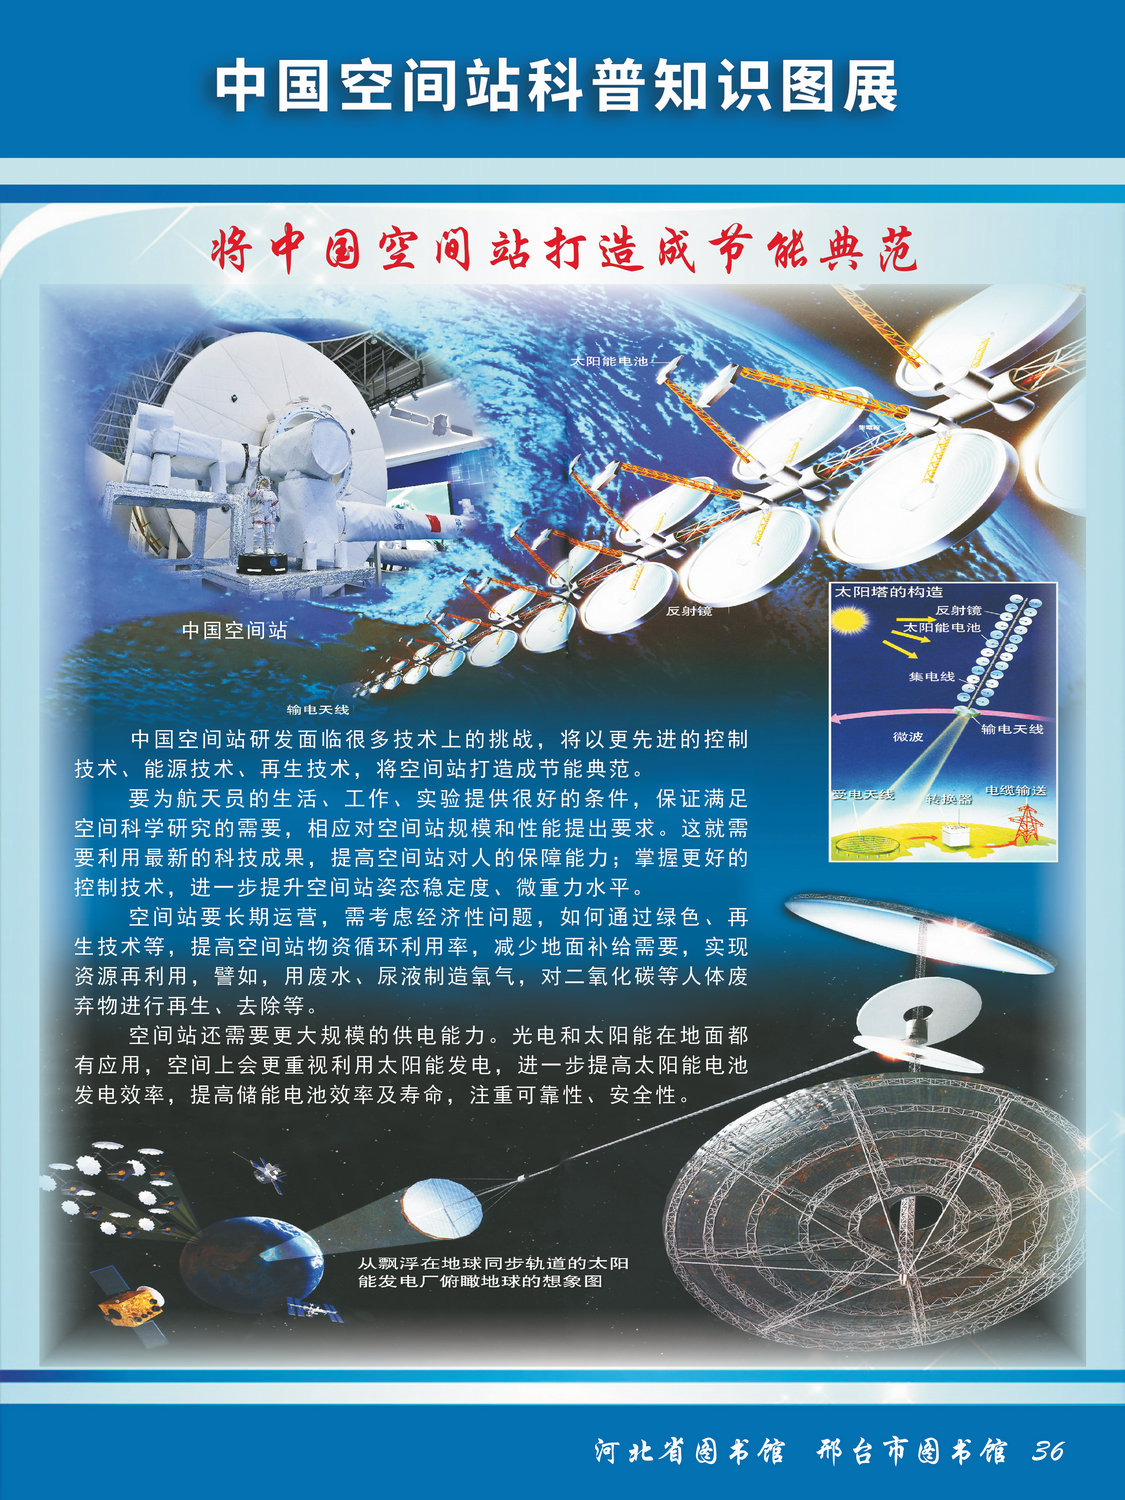 中国空间站科普知识图文展_图36